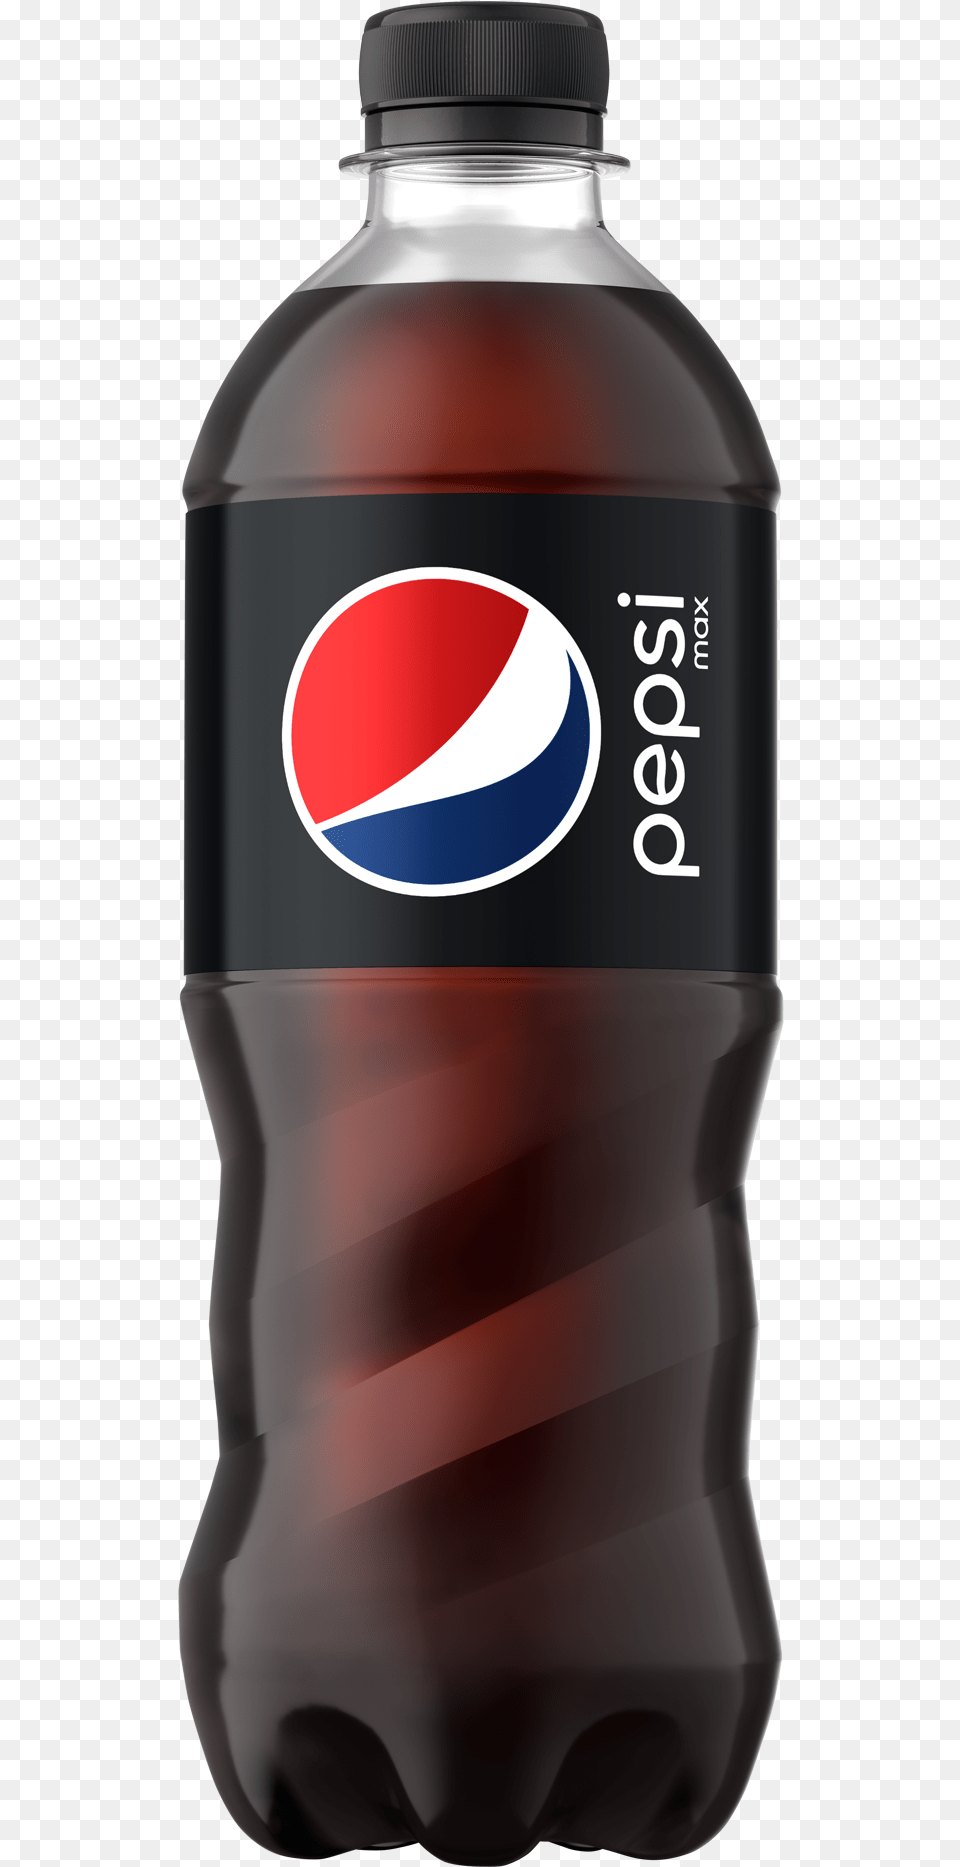 Pepsi, Beverage, Soda, Bottle, Shaker Free Transparent Png